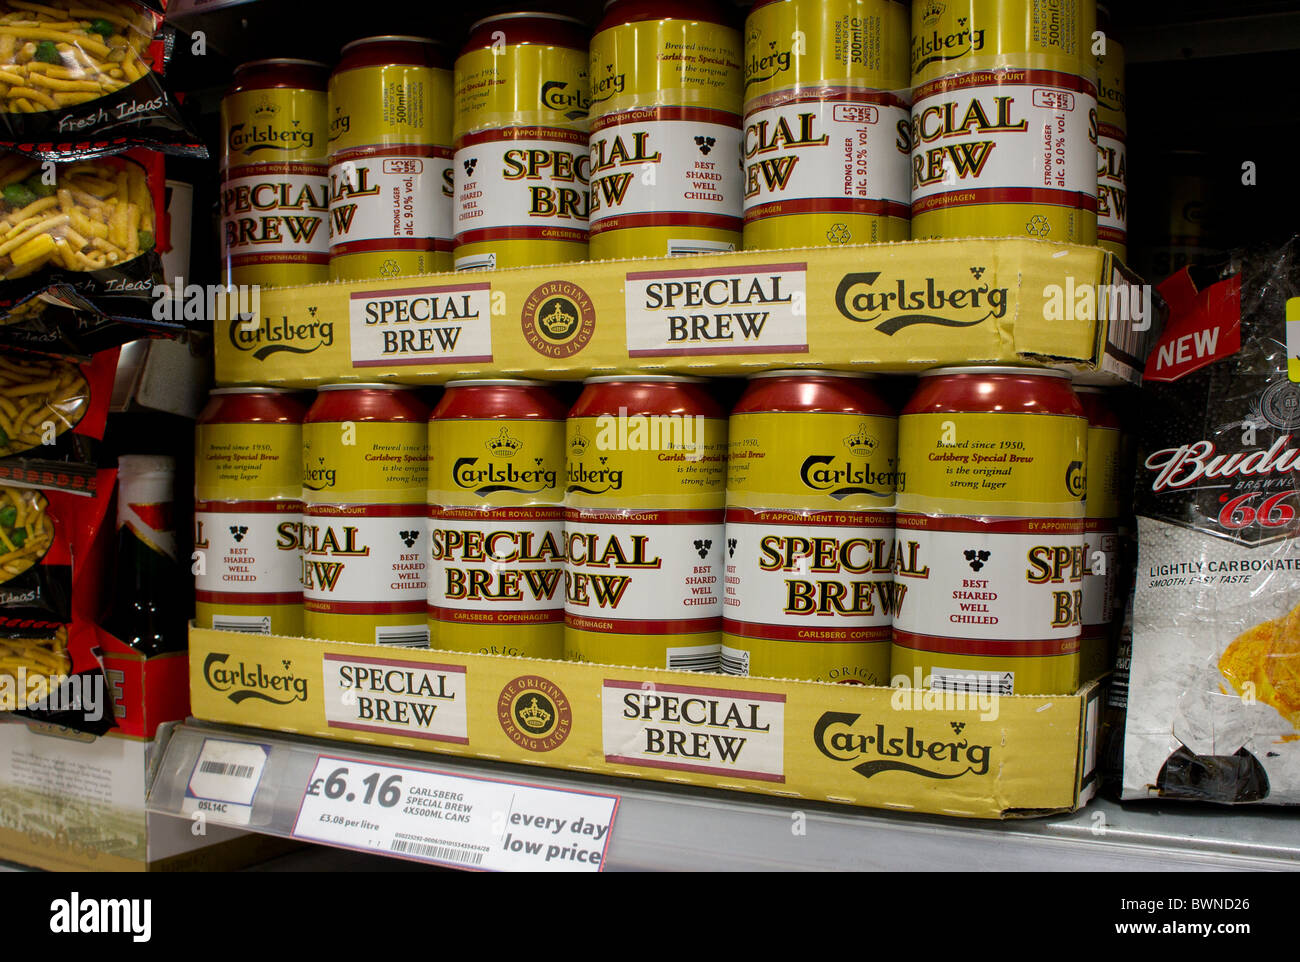 Latas de Cerveza especial ' ' extra strong lager en venta en un supermercado británico Foto de stock